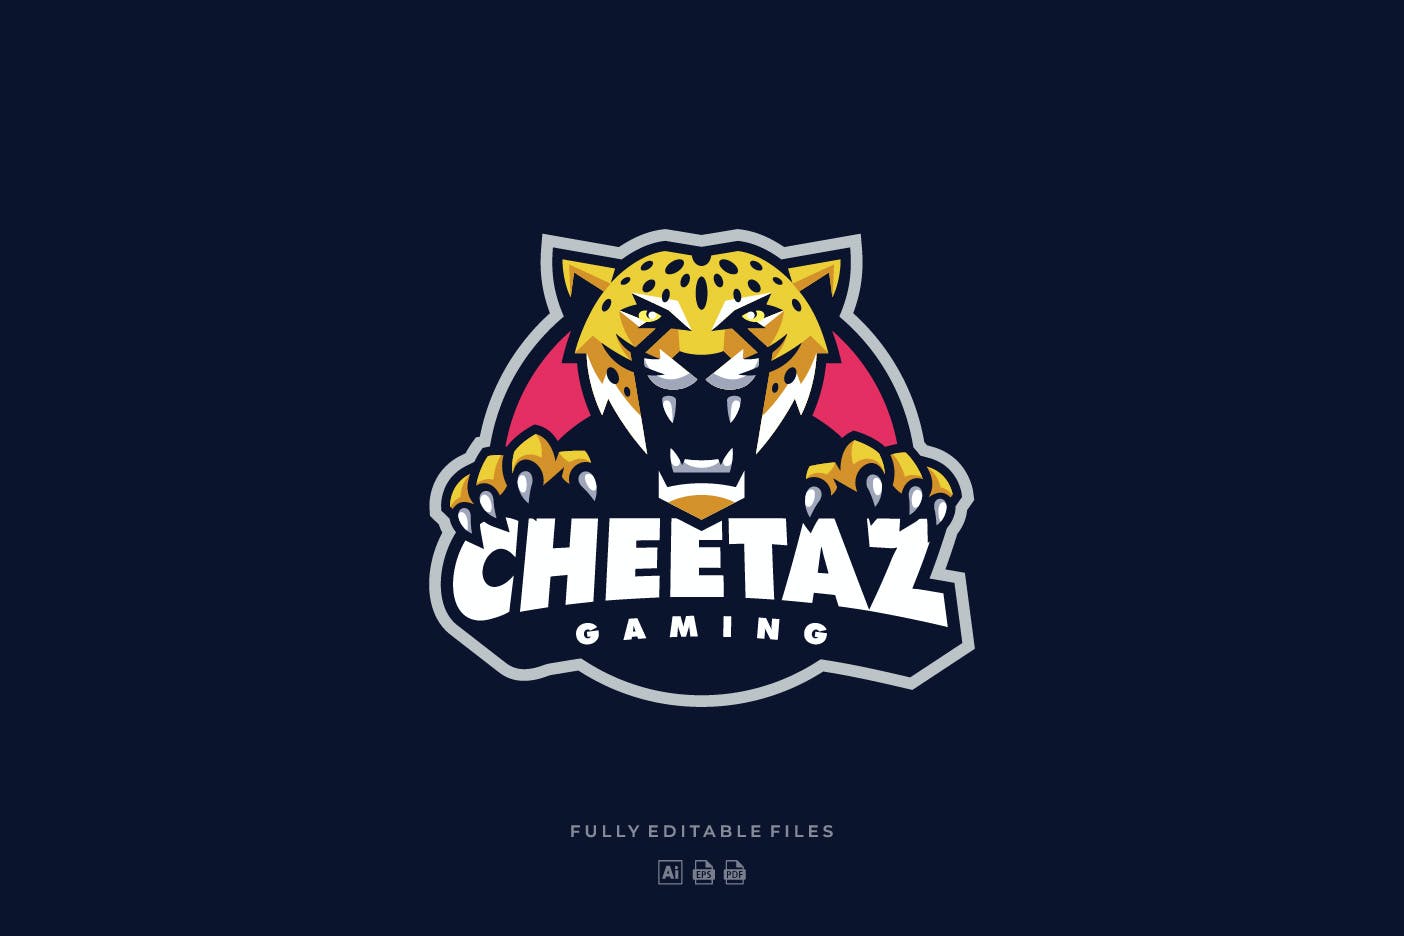 电子竞技Logo&猎豹体育运动徽标设计模板 Cheetah Sports and E-sports Logo设计素材模板